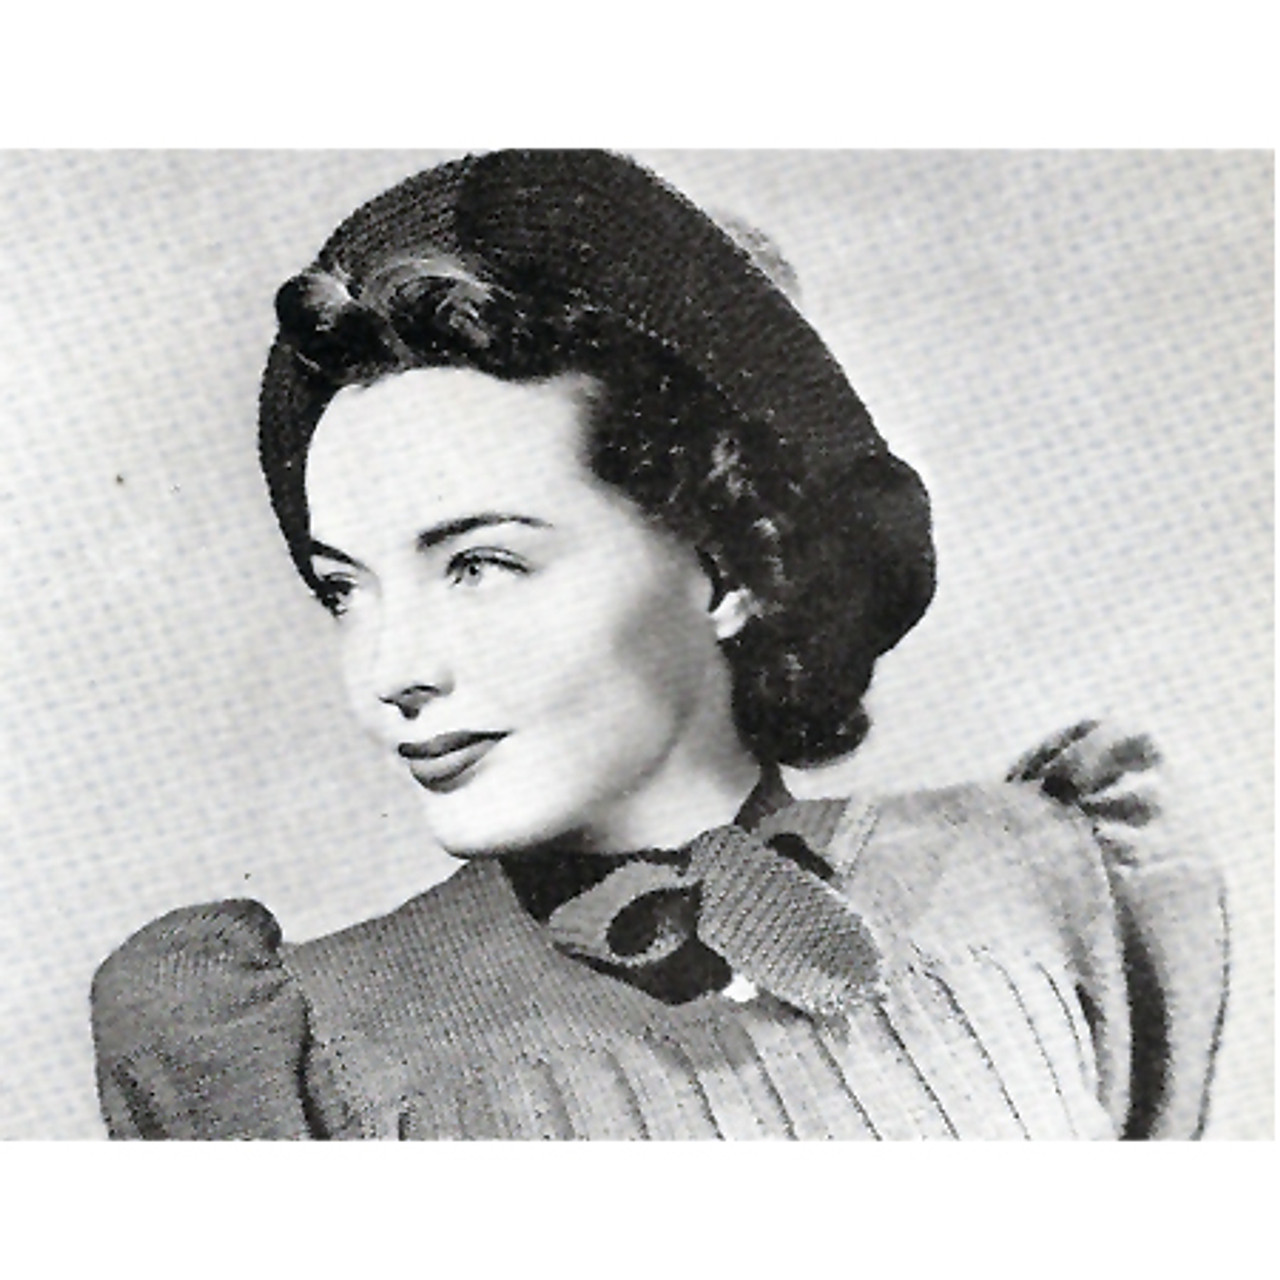 Vintage crocheted bonnet pattern